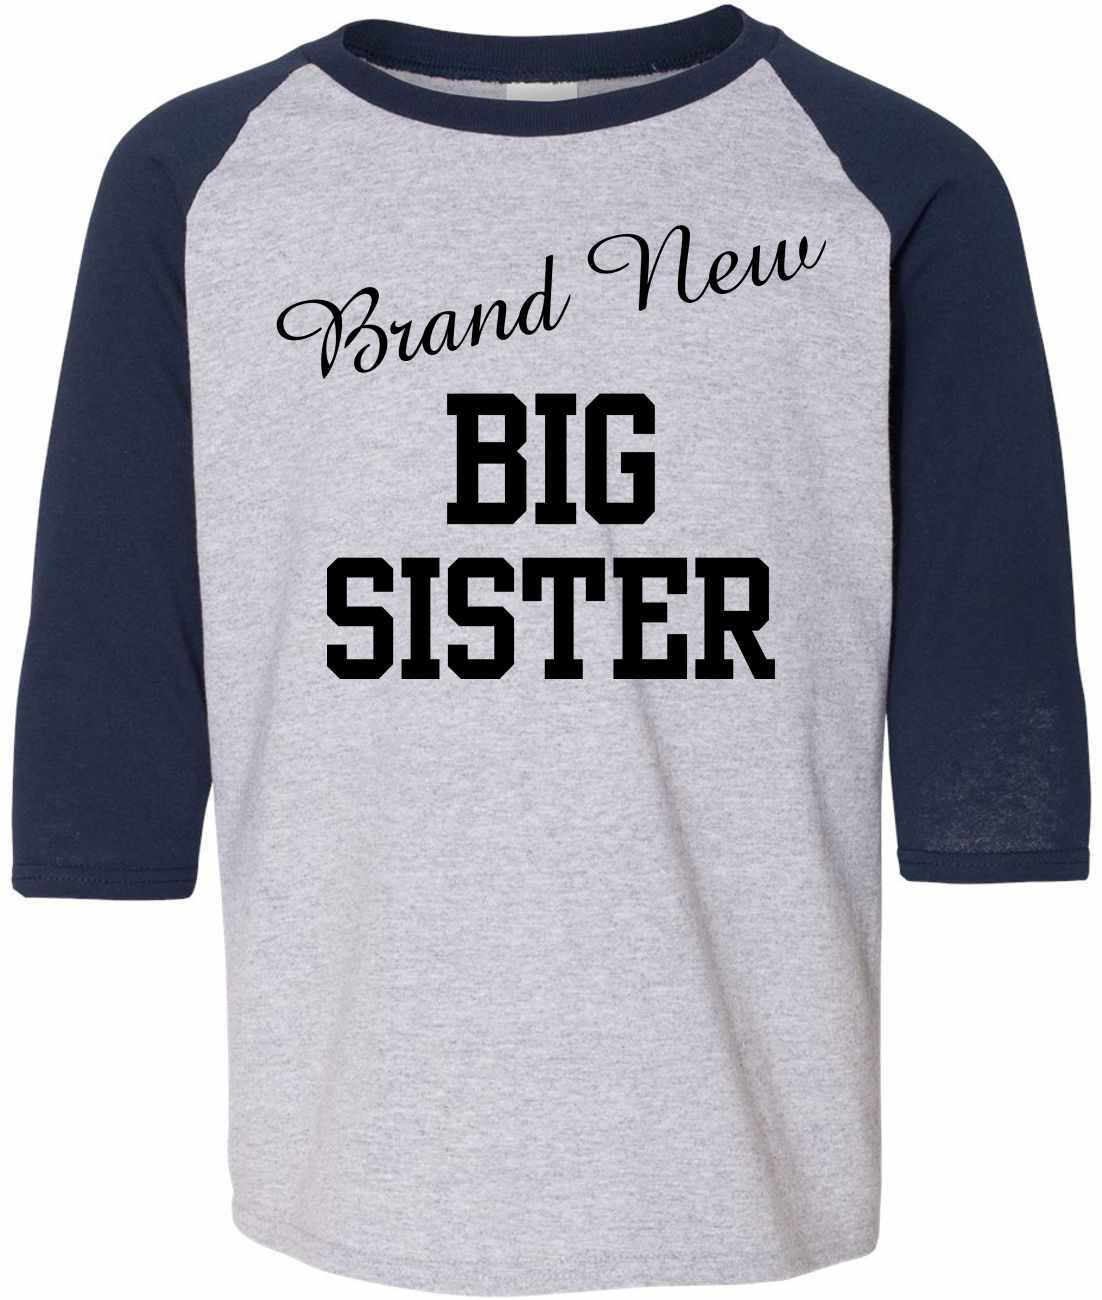 Brand New Big Sister on Youth Baseball Shirt (#1000-212)